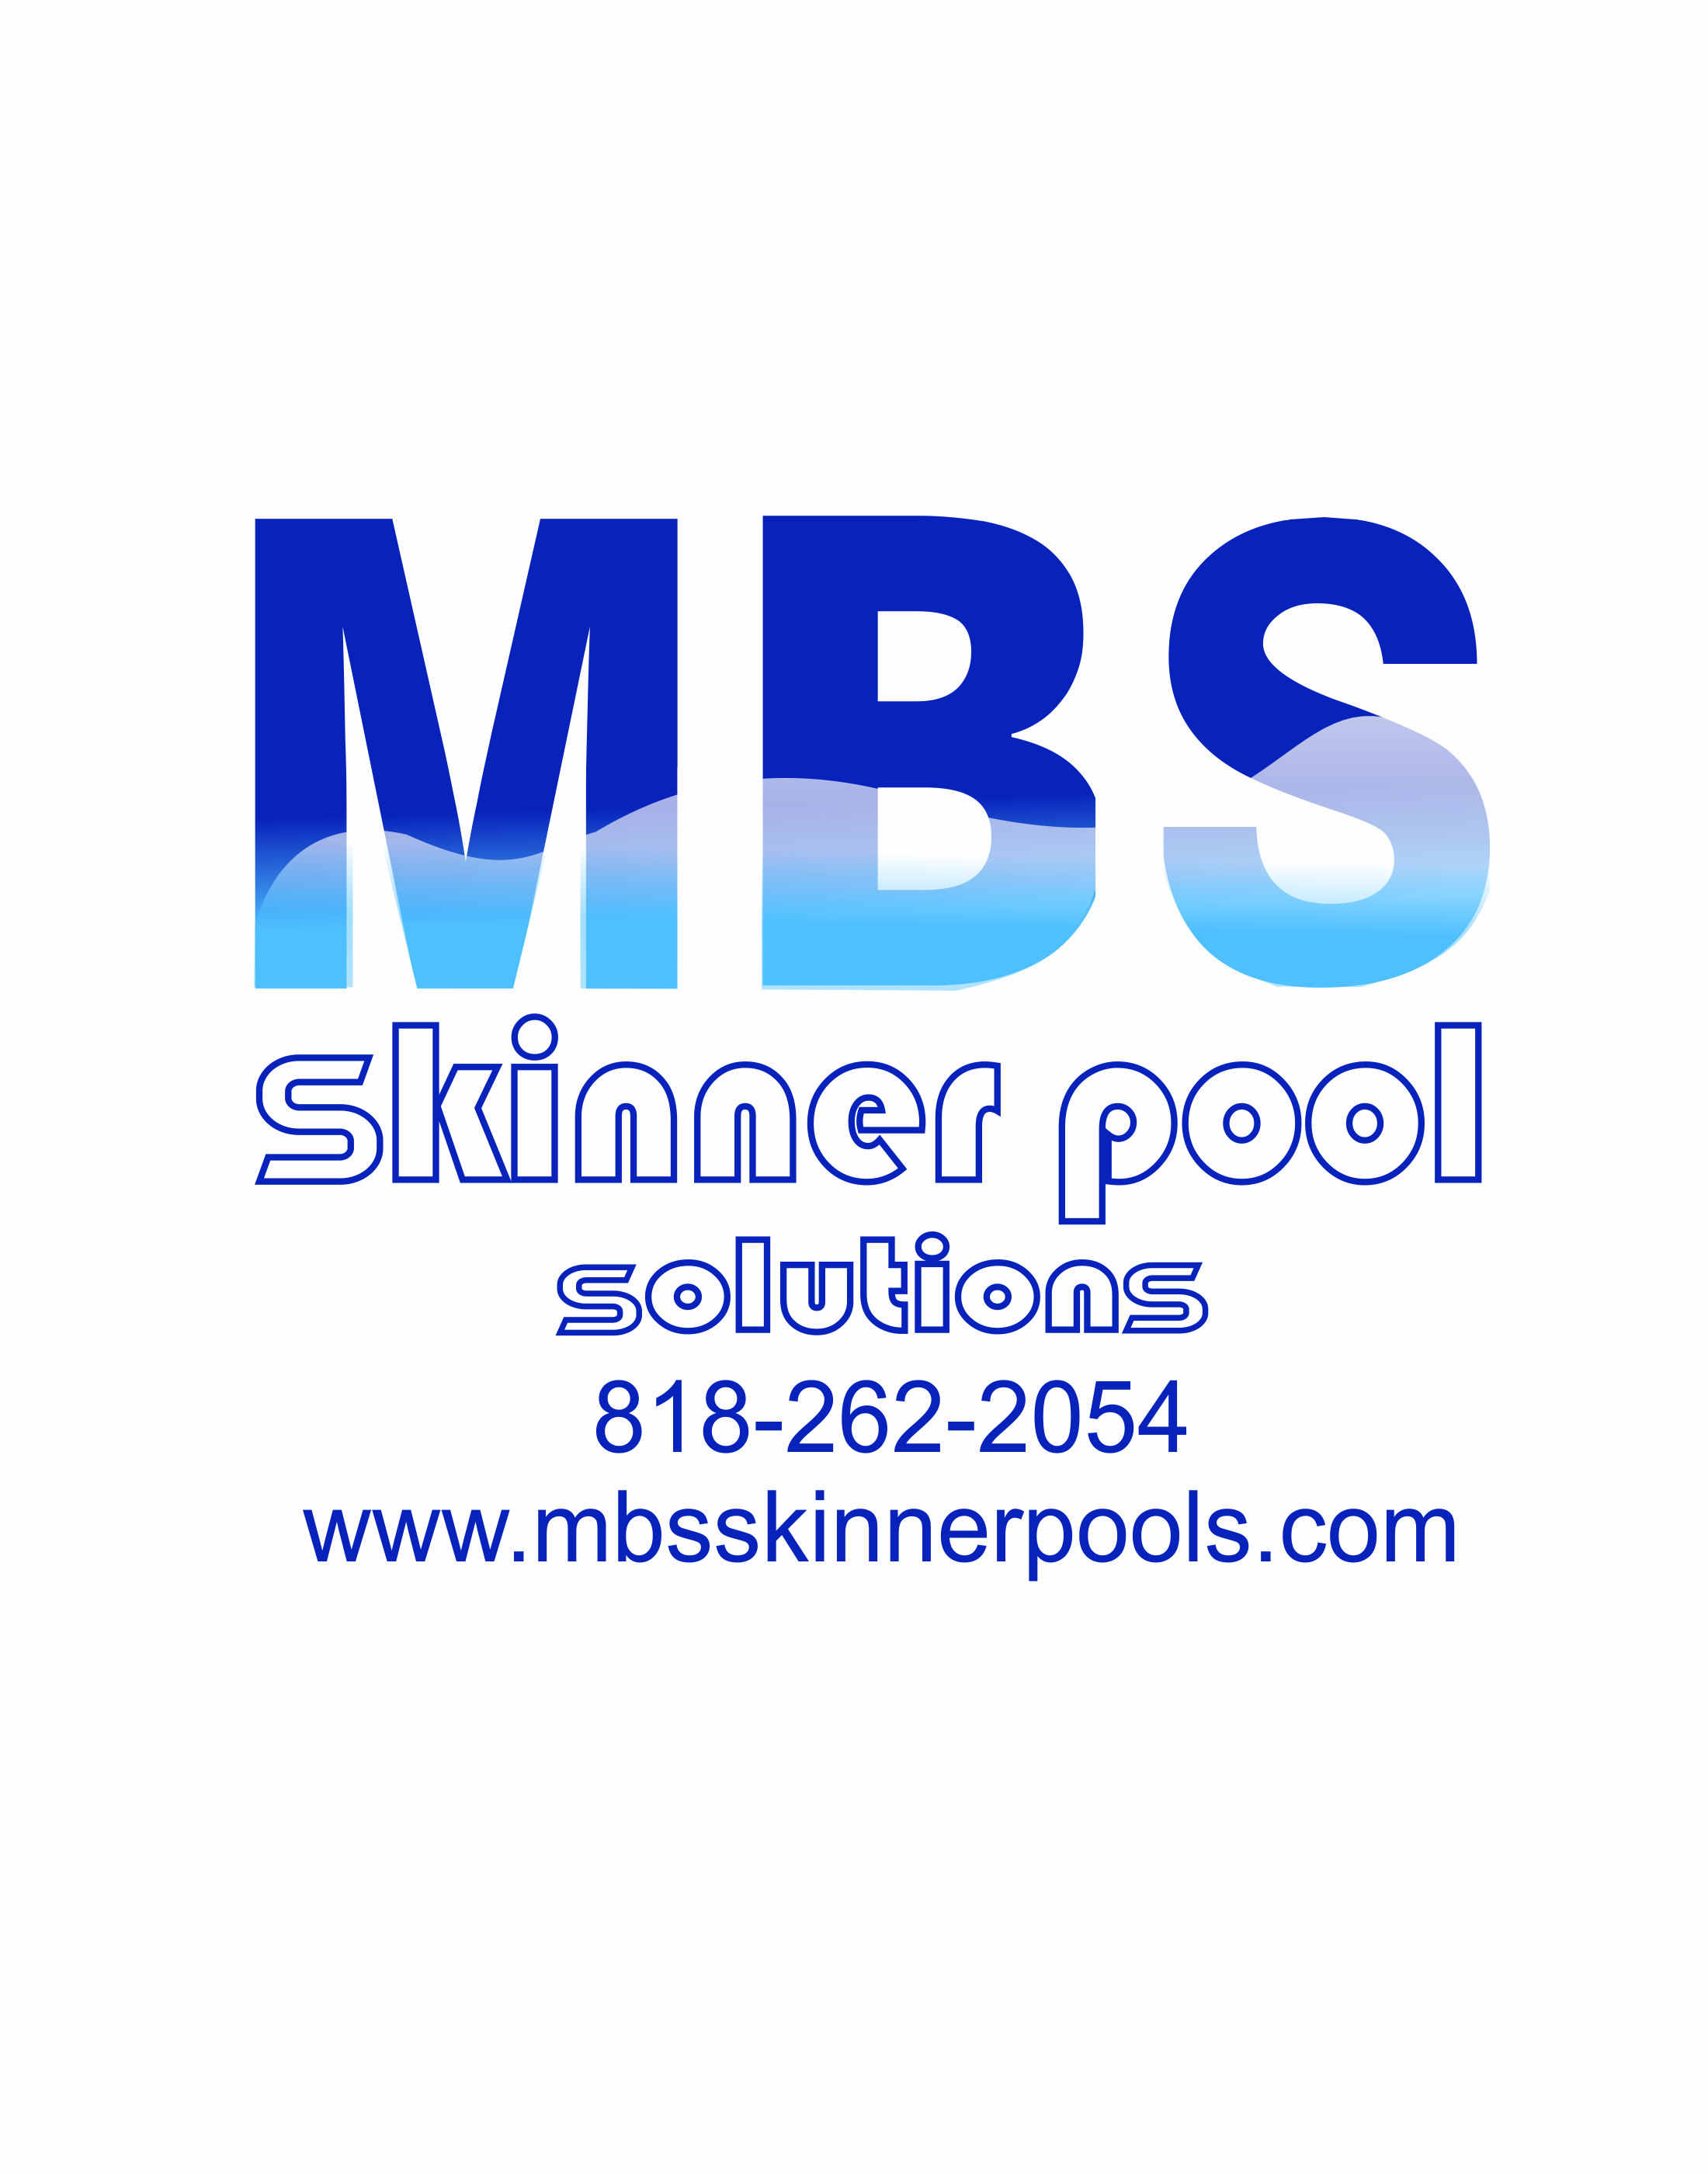 MBS Skinner Pool Solutions